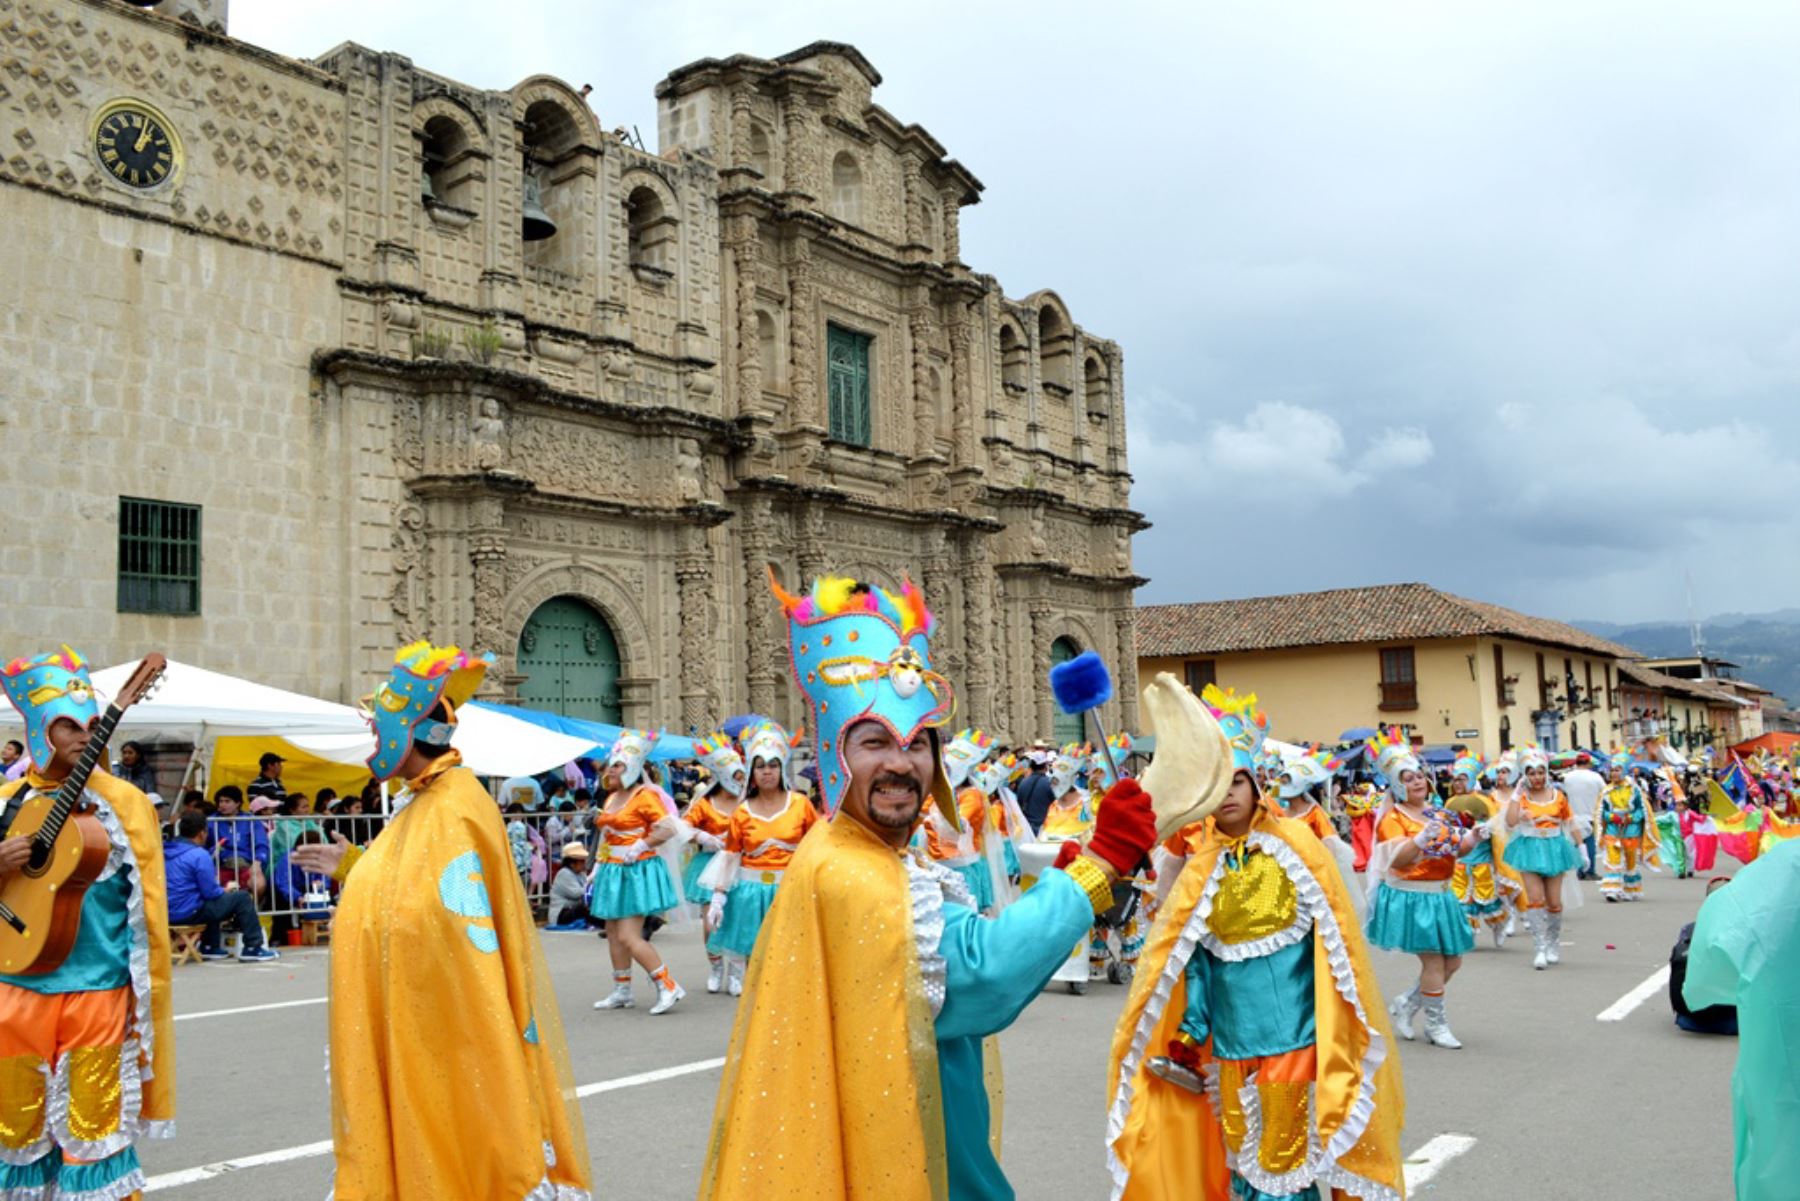 La celebración de los carnavales, que colma de júbilo, colorido y participación popular a todo el Perú, es también una ocasión para conocer y disfrutar de los diversos recursos y atractivos turísticos en las regiones donde se desarrolla esta tradicional festividad. ANDINA/archivo